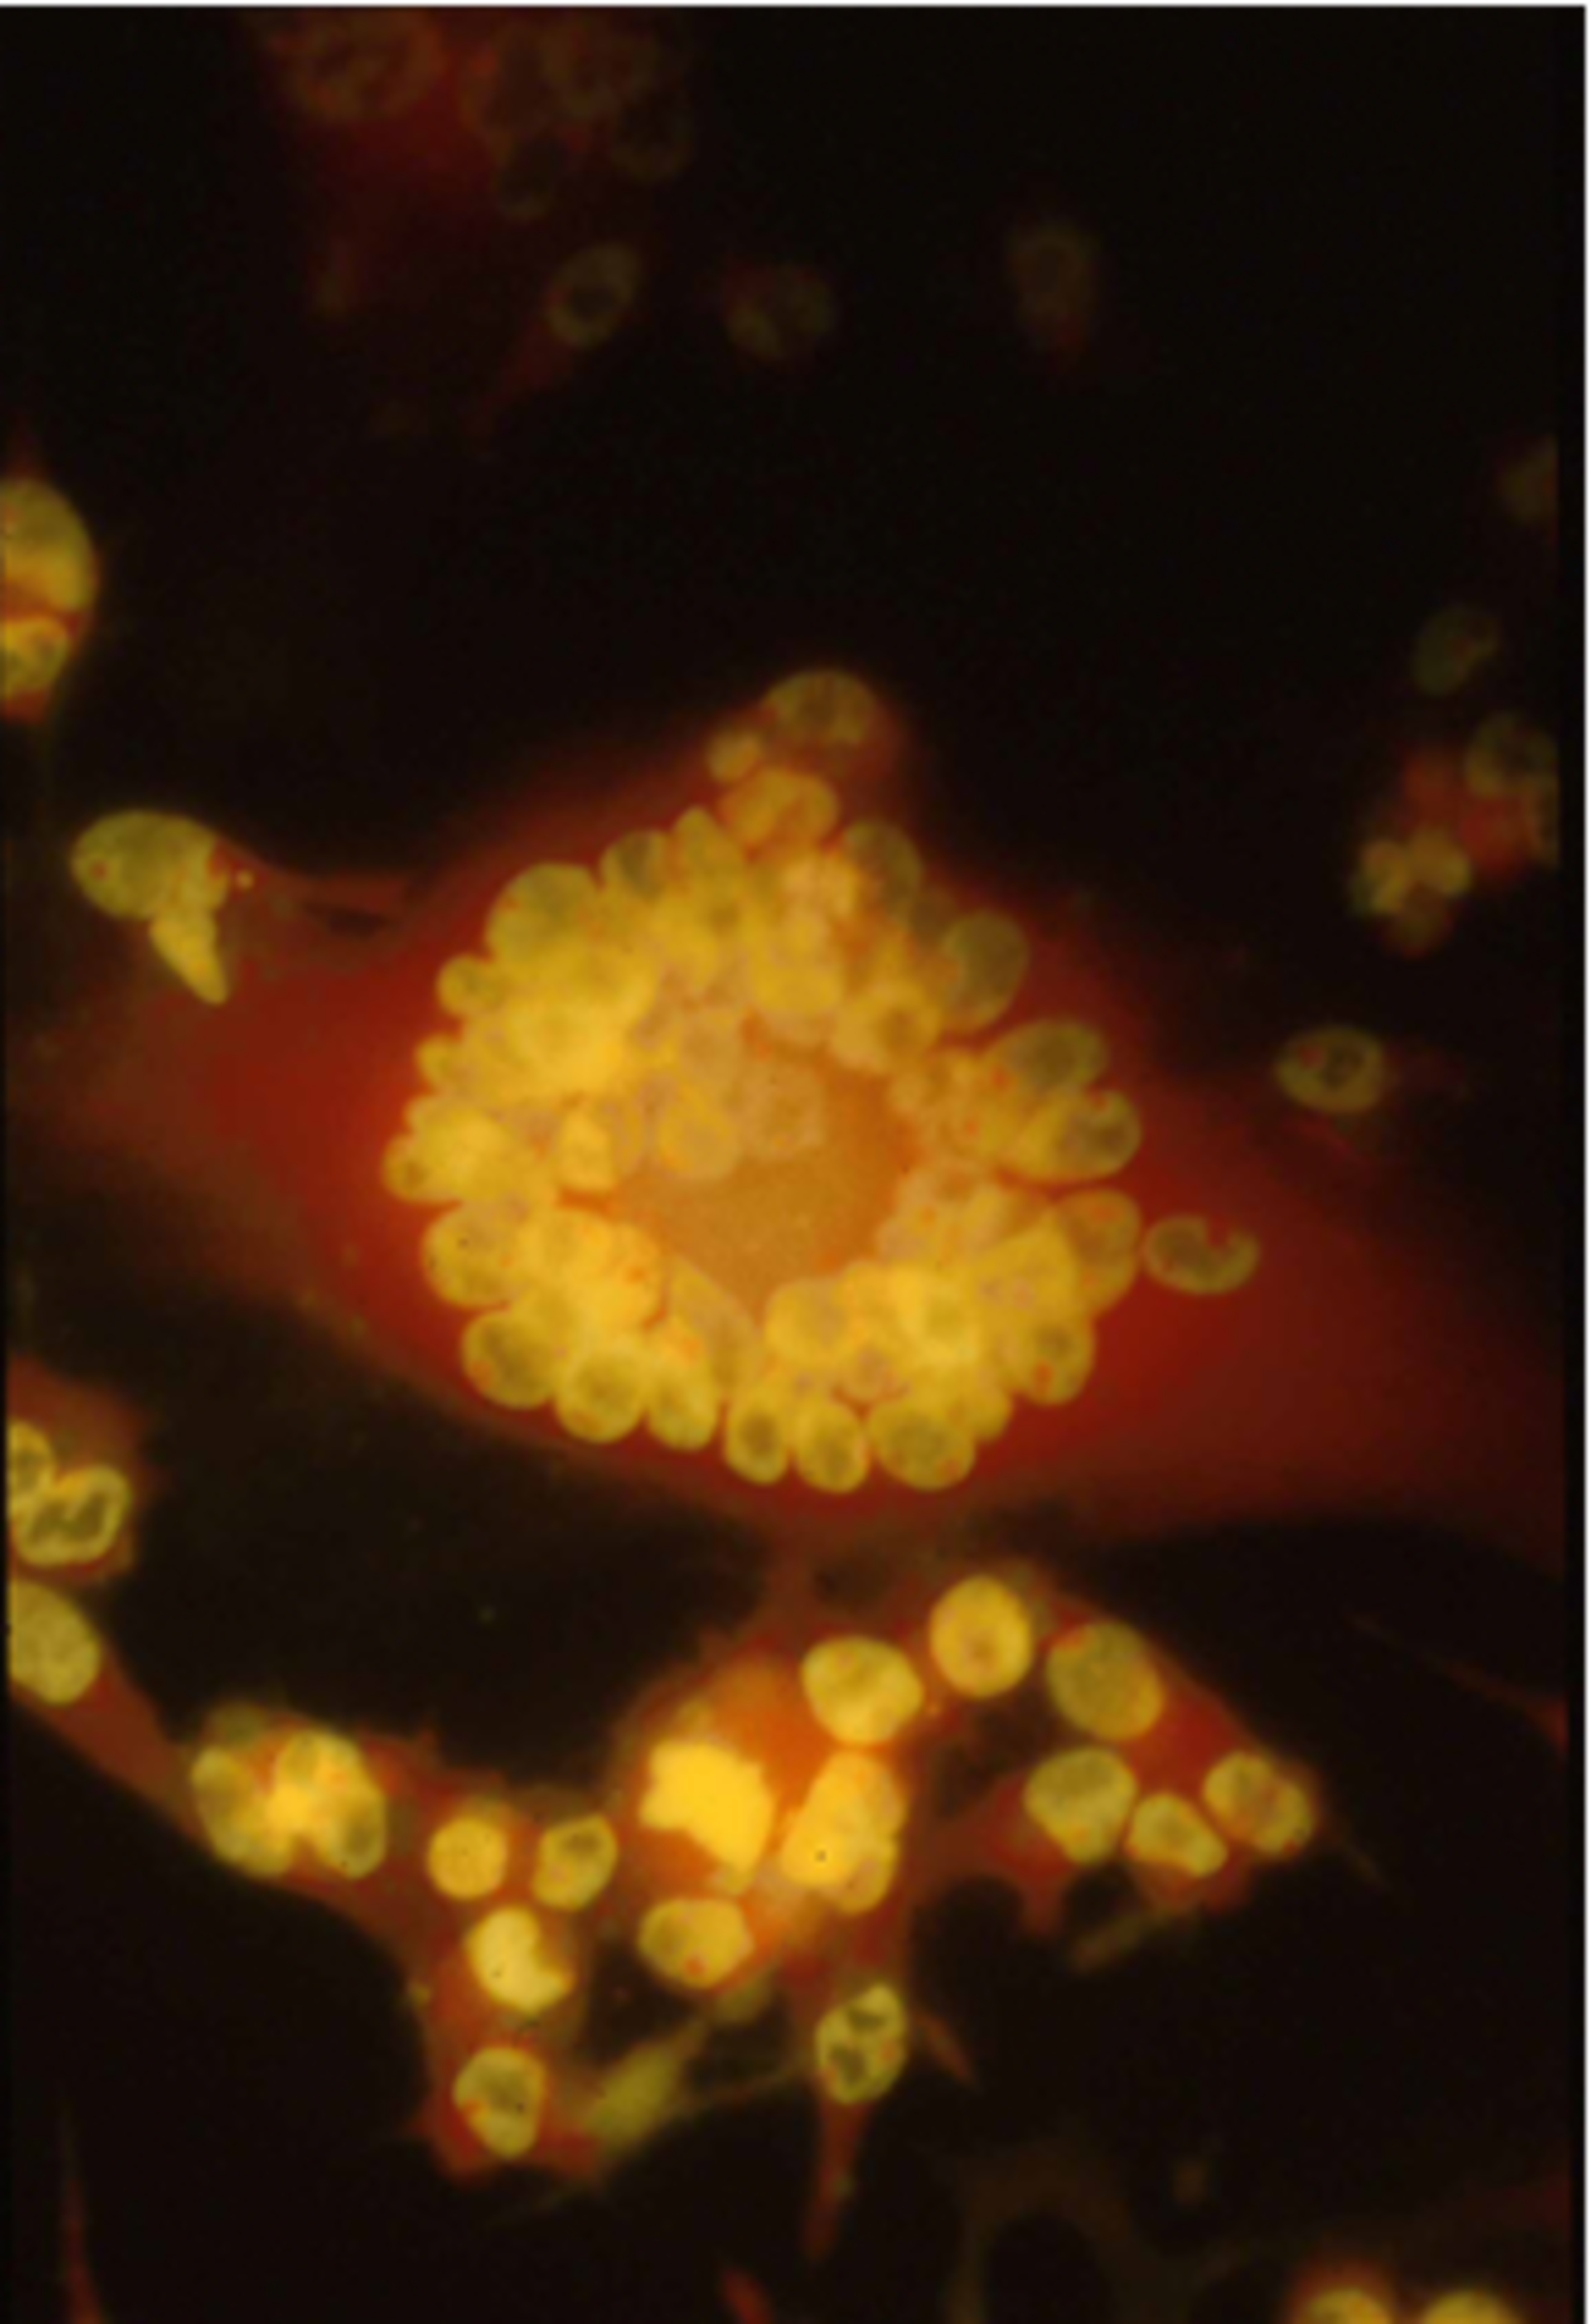 VZV-infizierte MeWo-Zellen: Zu erkennen sind die typischen, vom Herpesvirus induzierten, mehrkernigen Riesenzellen. Die Kulturen wurden zum Nachweis von RNA (rot) im Zytoplasma mit Acridinorange eingefärbt.